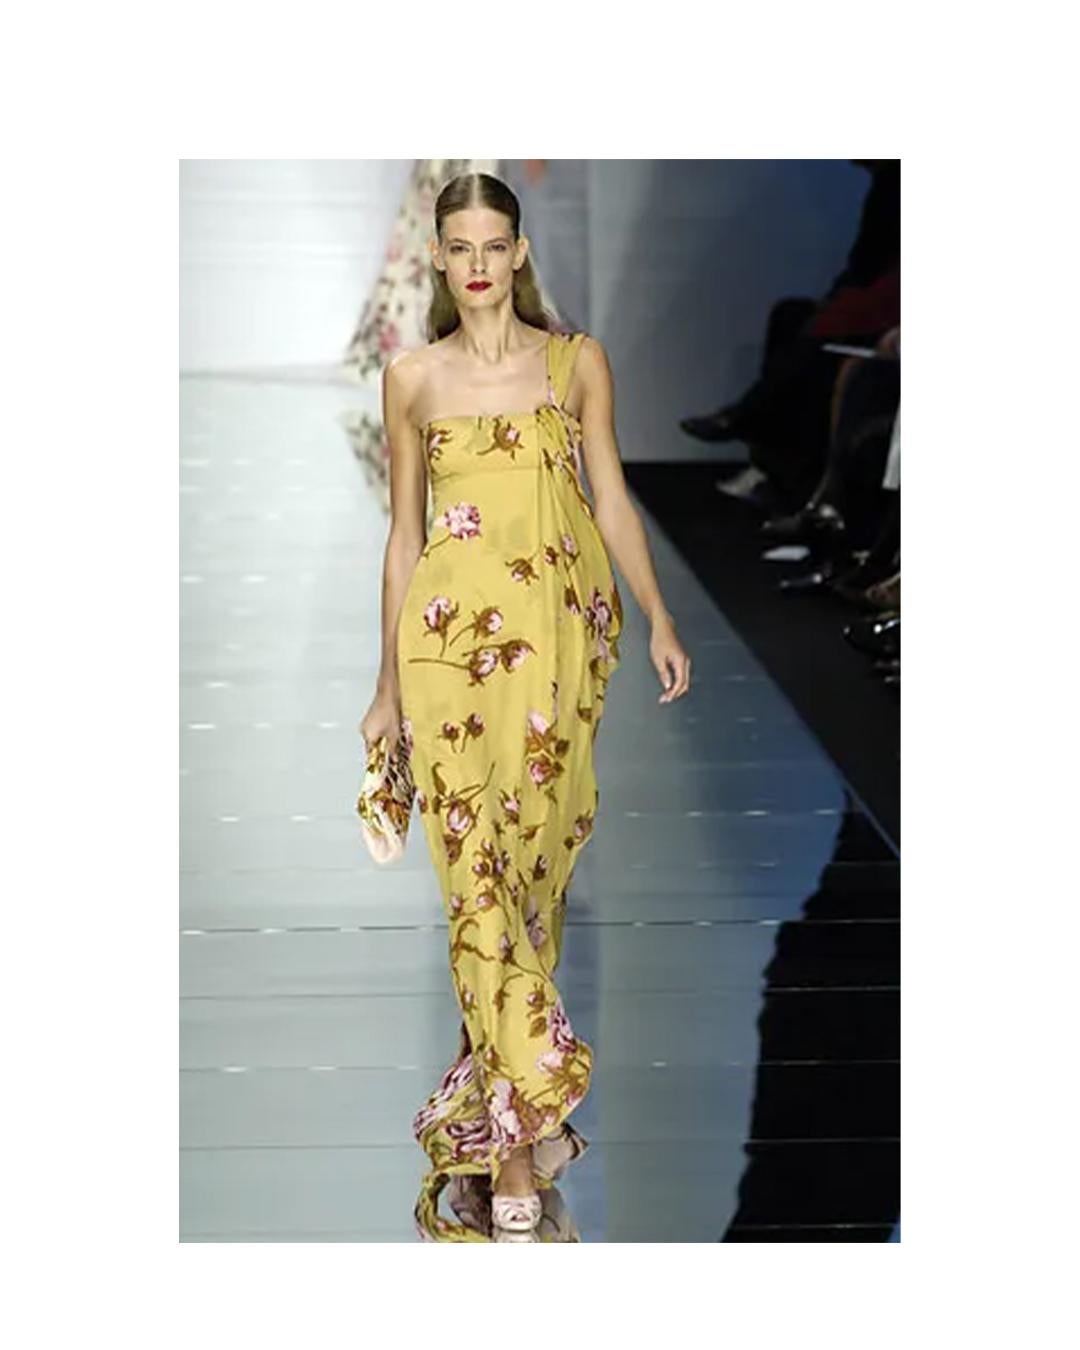 LOVE LALI VINTAGE

Ein so verträumtes und romantisches Kleid von Valentino S/S 2006, das als Look 63 auf dem Laufsteg in Gelb zu sehen war
Besteht aus schräg geschnittenen Seidenchiffonlagen
Die untere Schicht ist die senfgelbe Farbe, die man auf